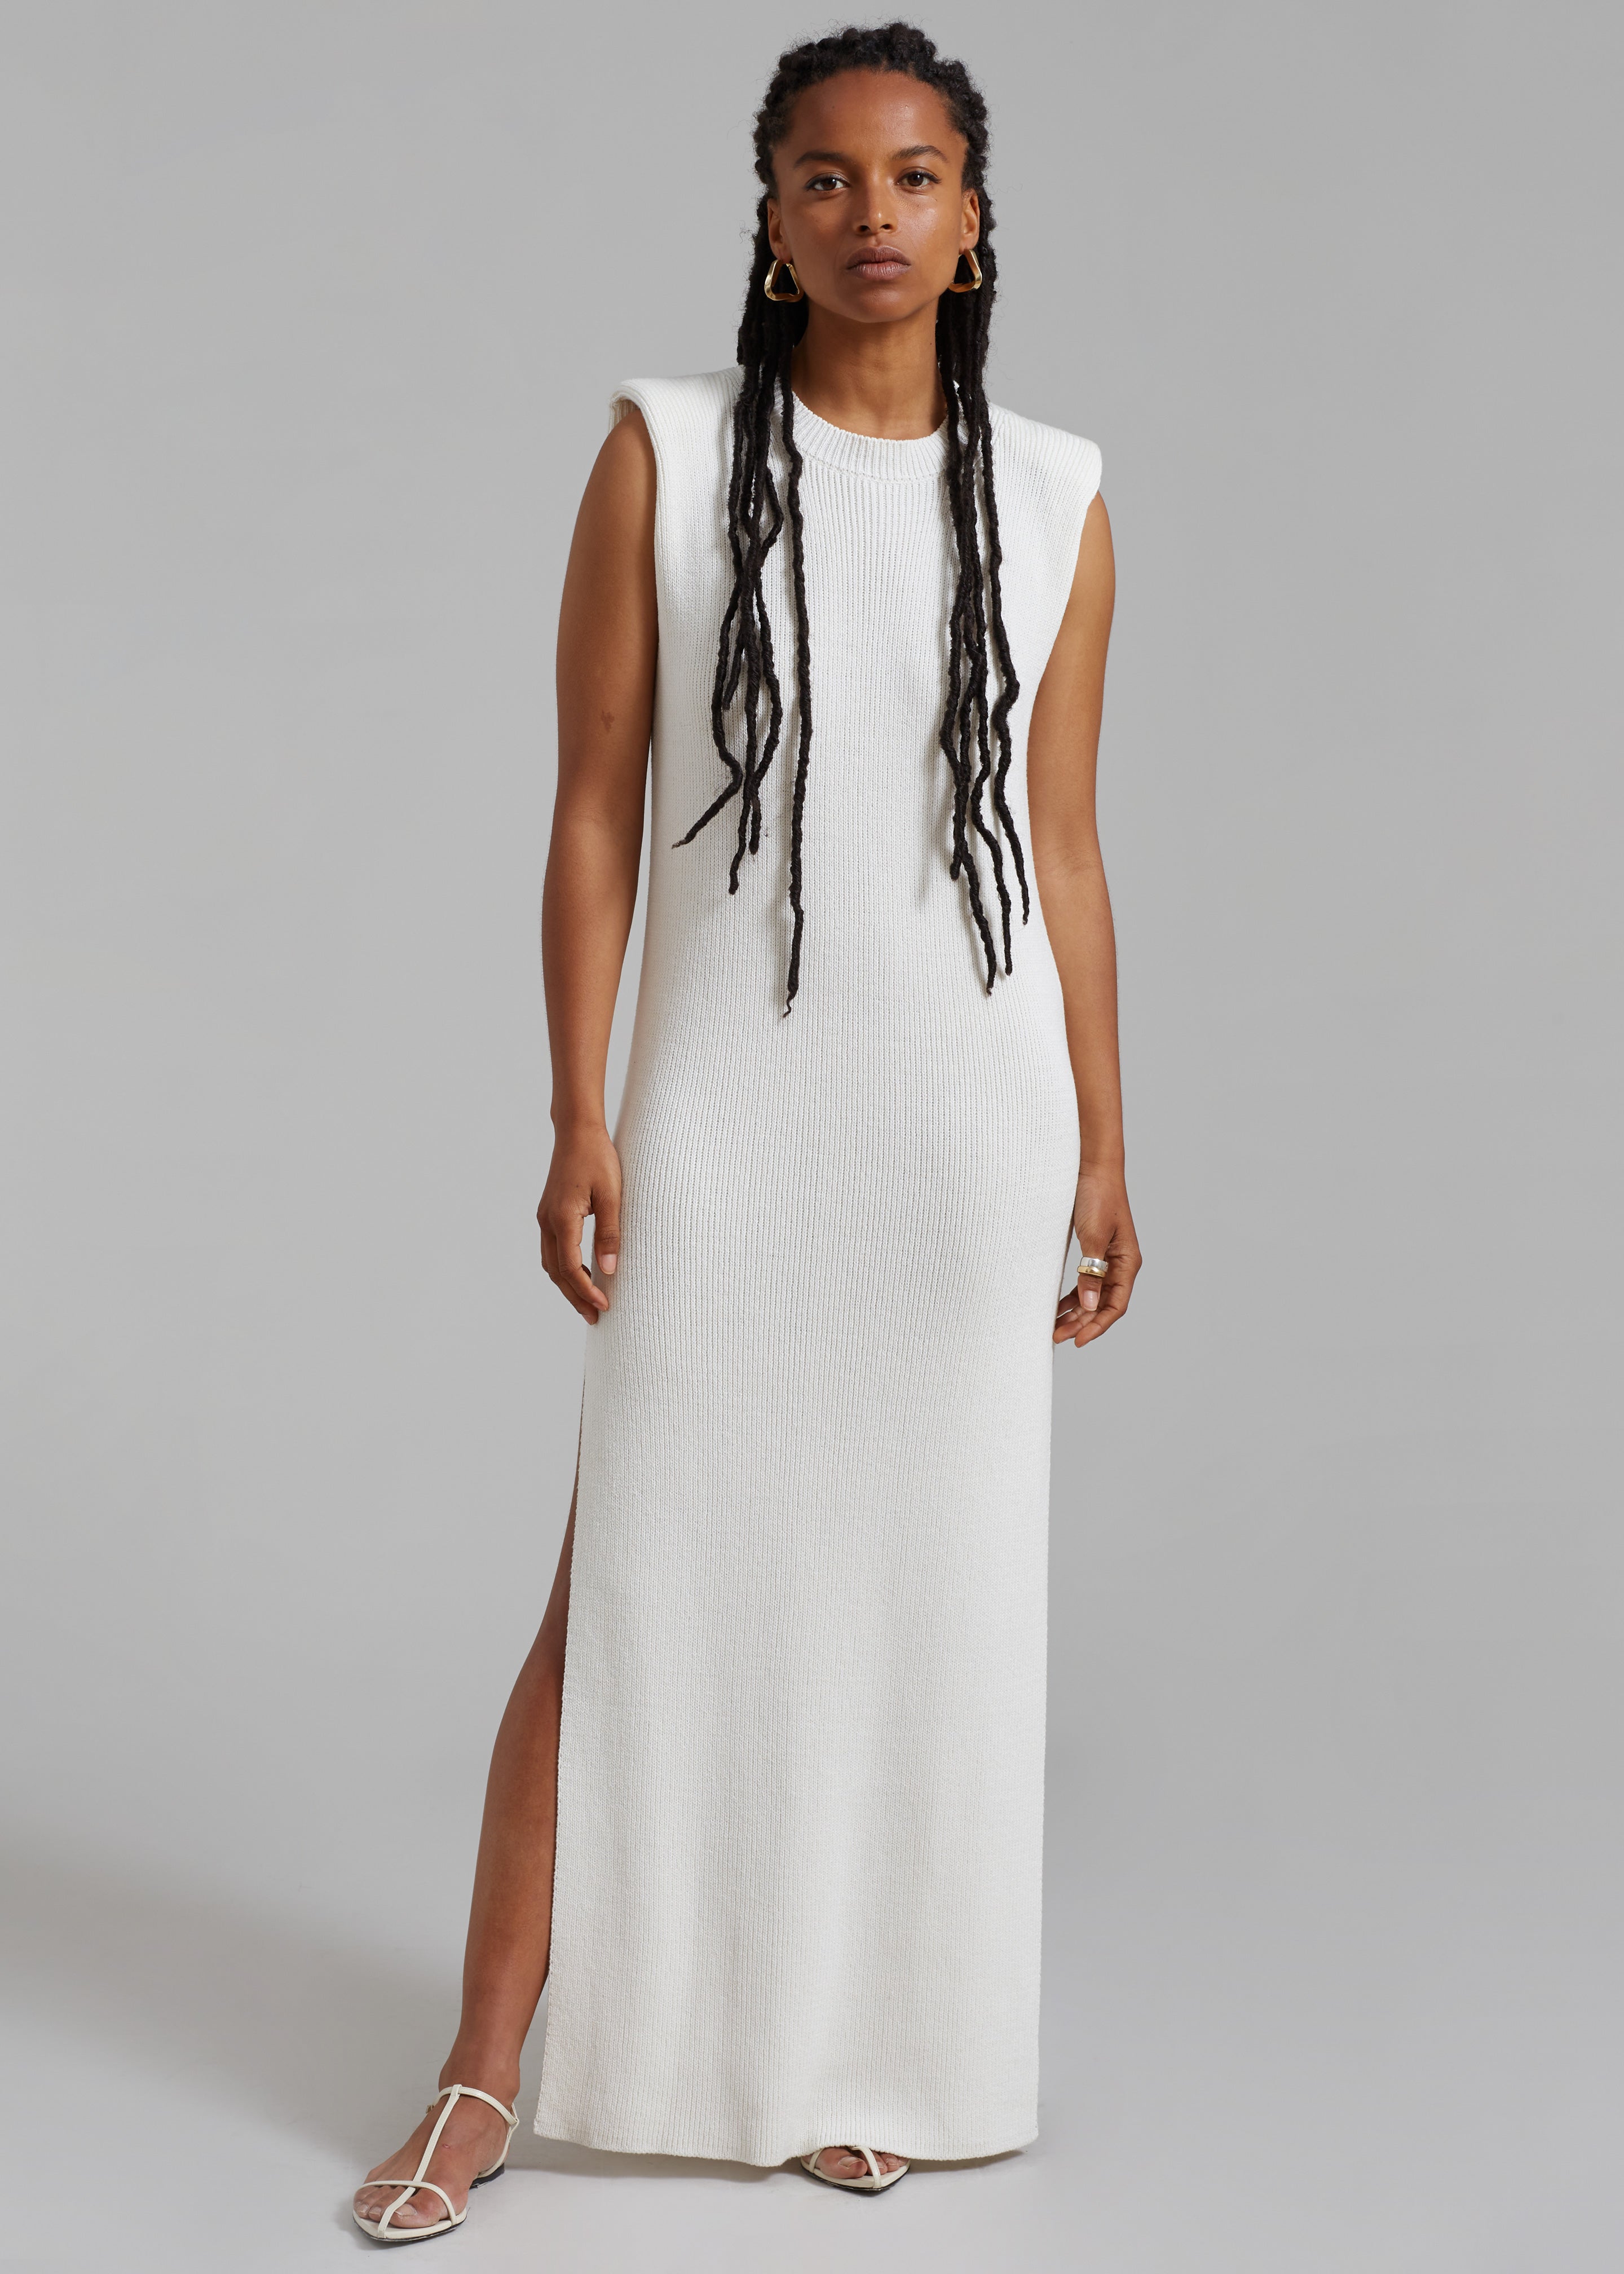 Wren Sleeveless Knit Dress - White - 5